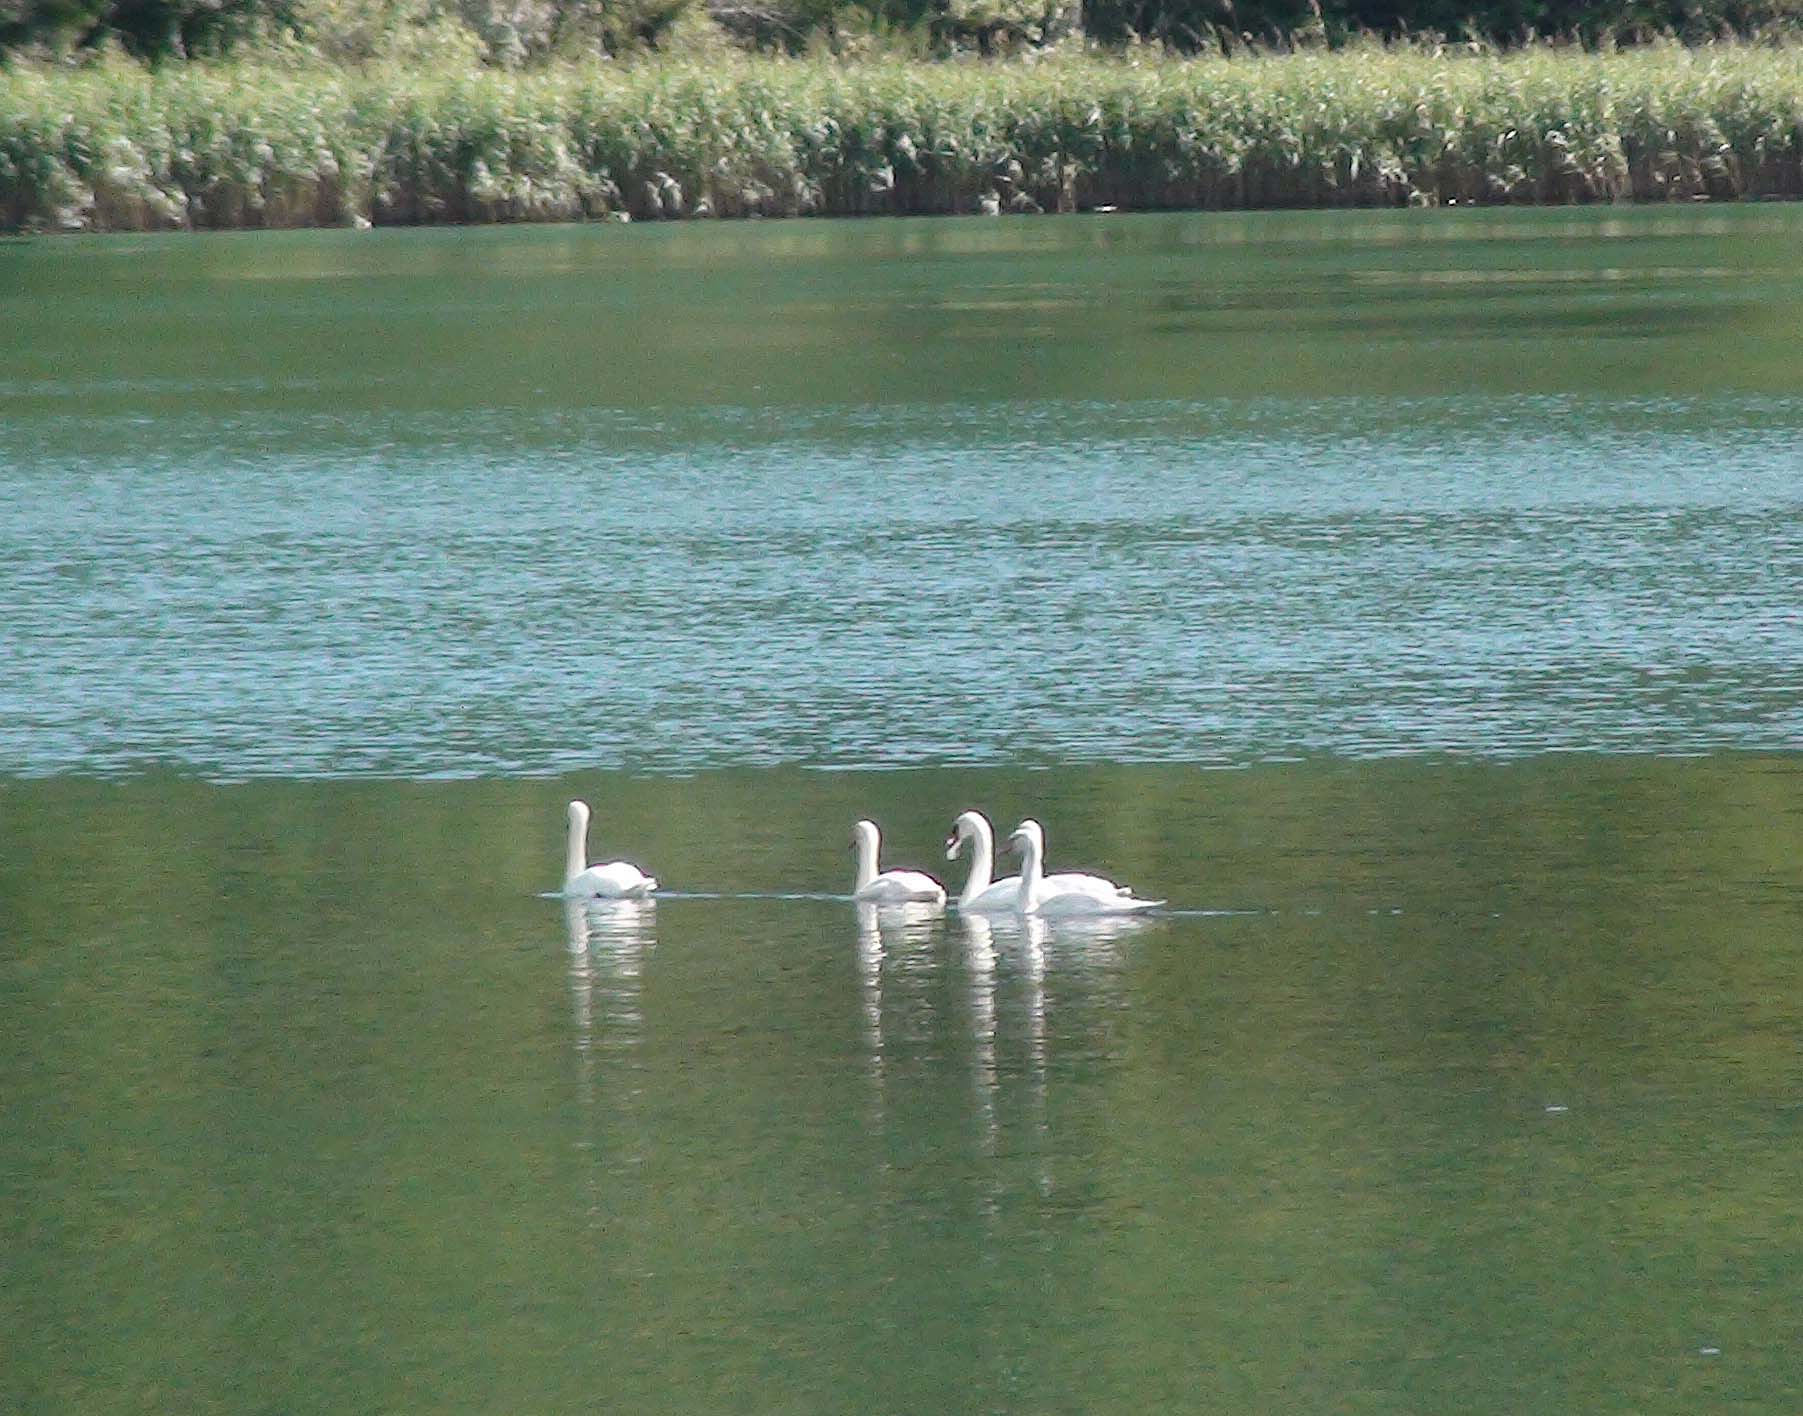 Хорватия. Национальный парк Крка. Лебеди.